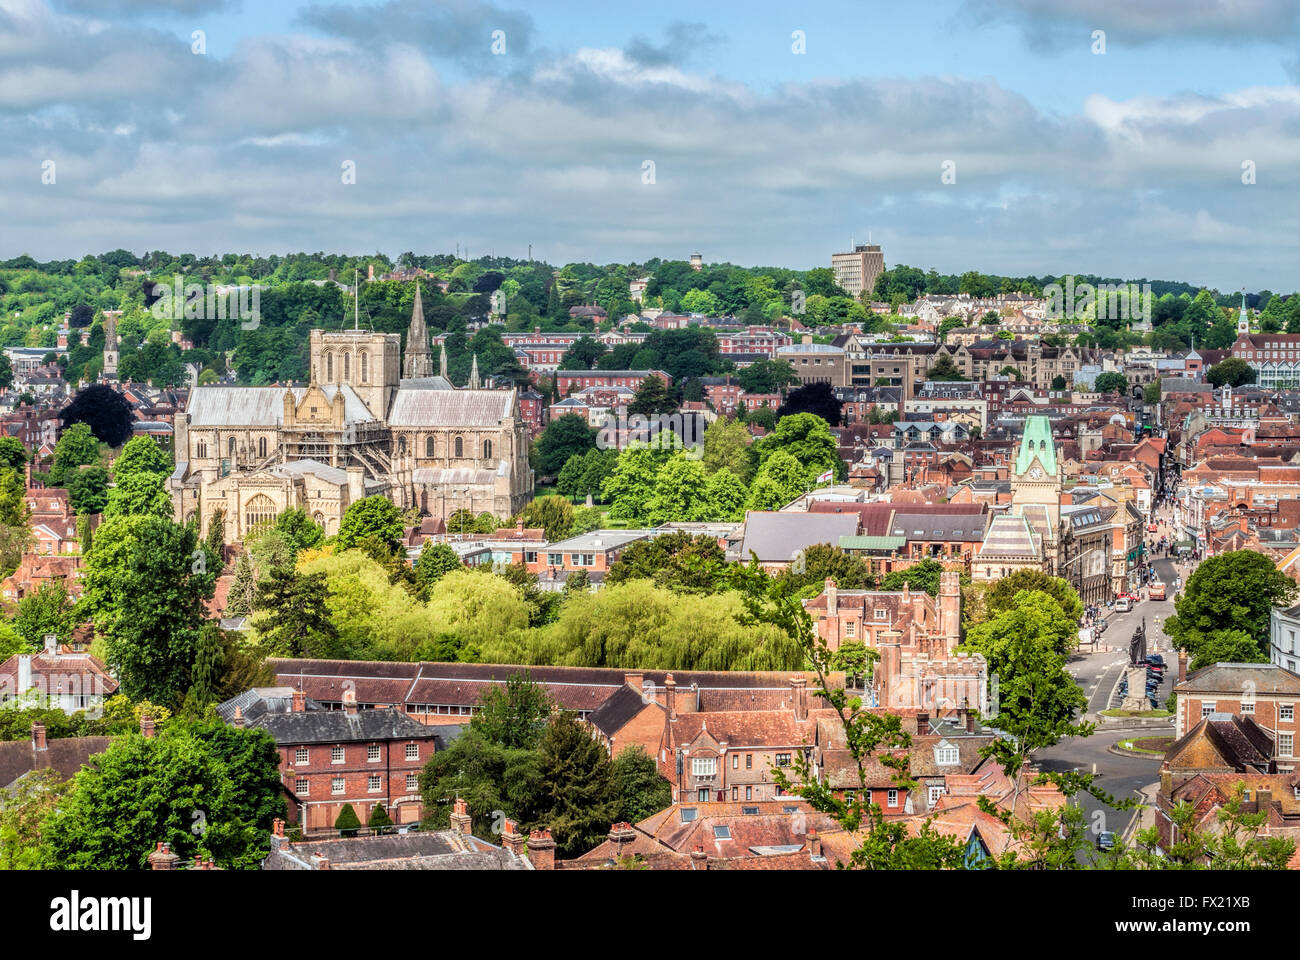 Vue sur la vieille ville historique de Winchester, Hampshire, Angleterre. Banque D'Images